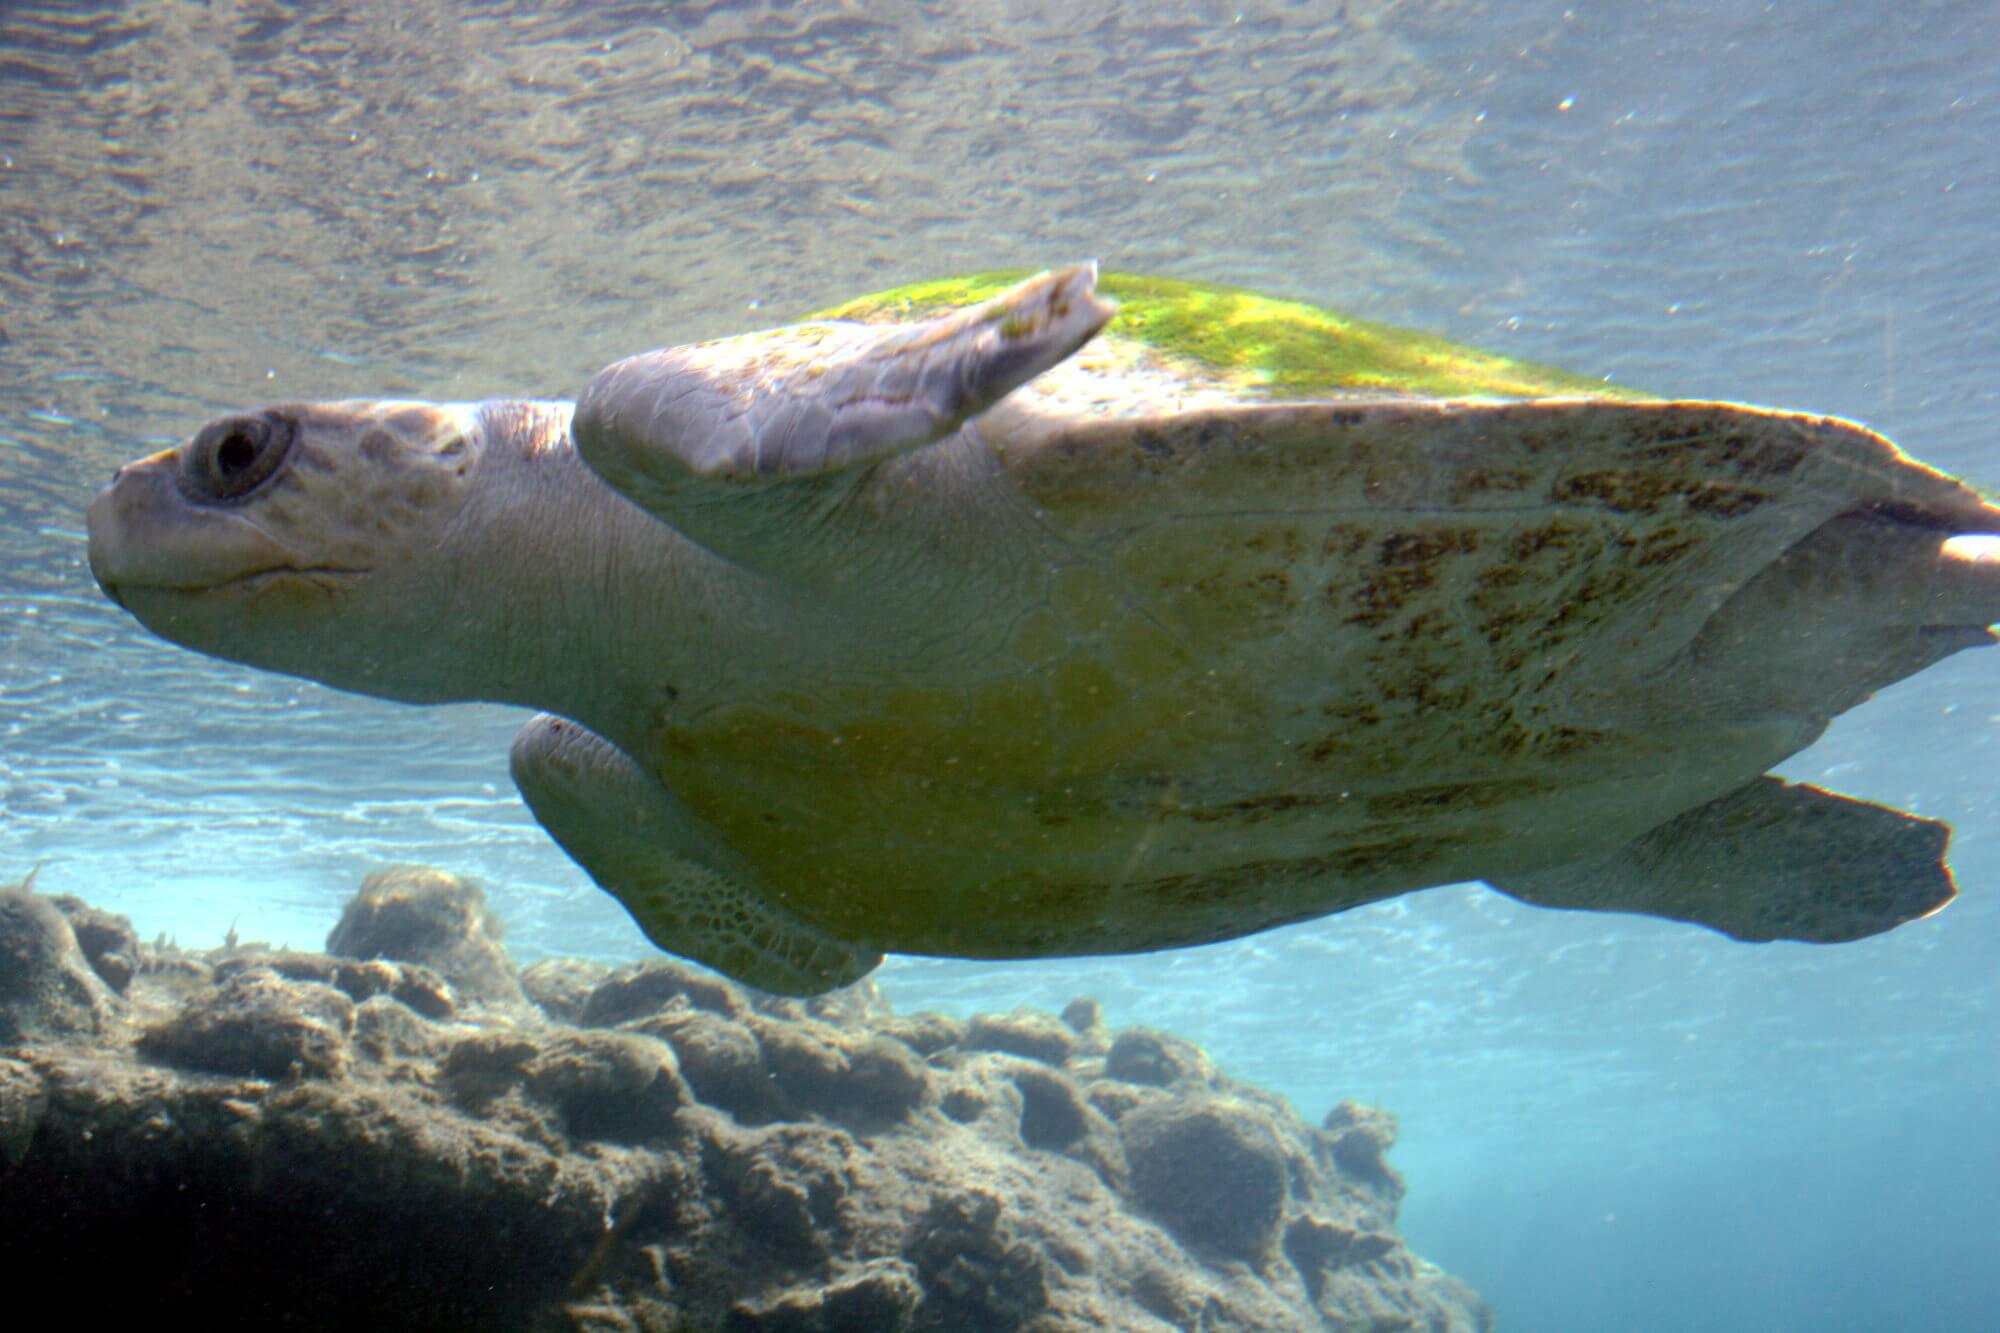 #video | Biologi visto la prima volta il più grande ammasso di tartarughe marine